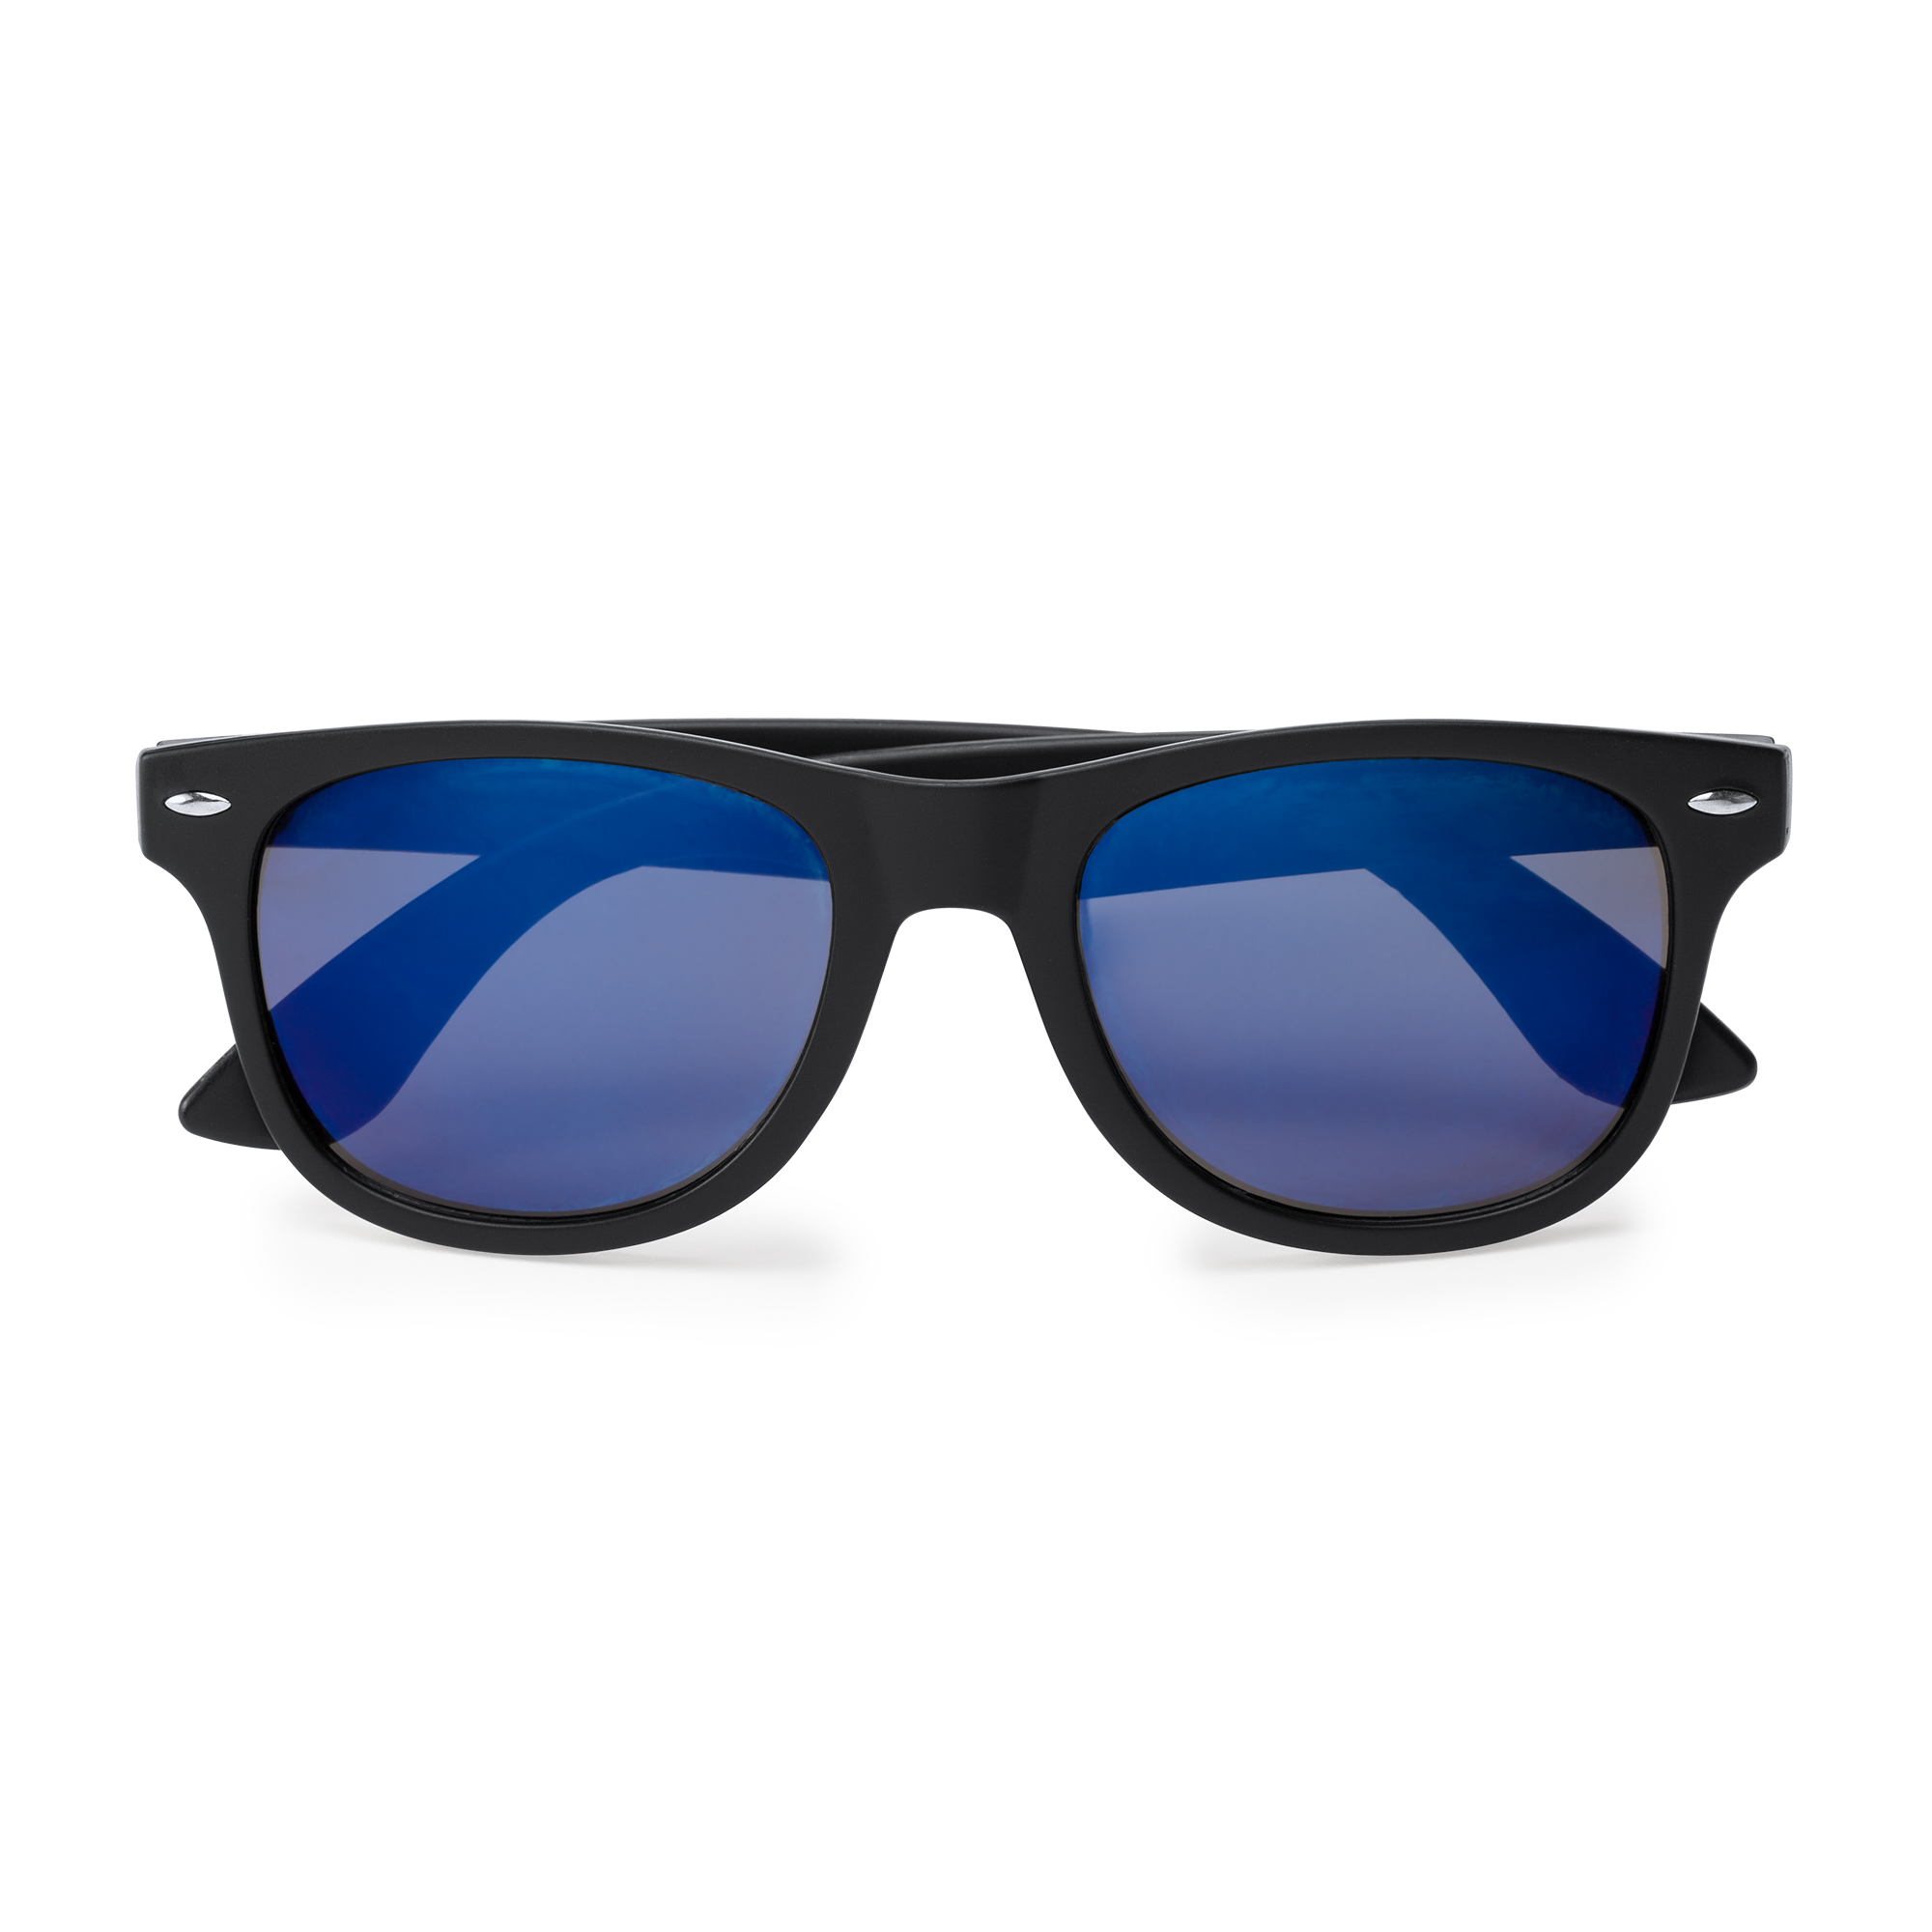 6008-paricle-occhiali-da-sole-blu.jpg